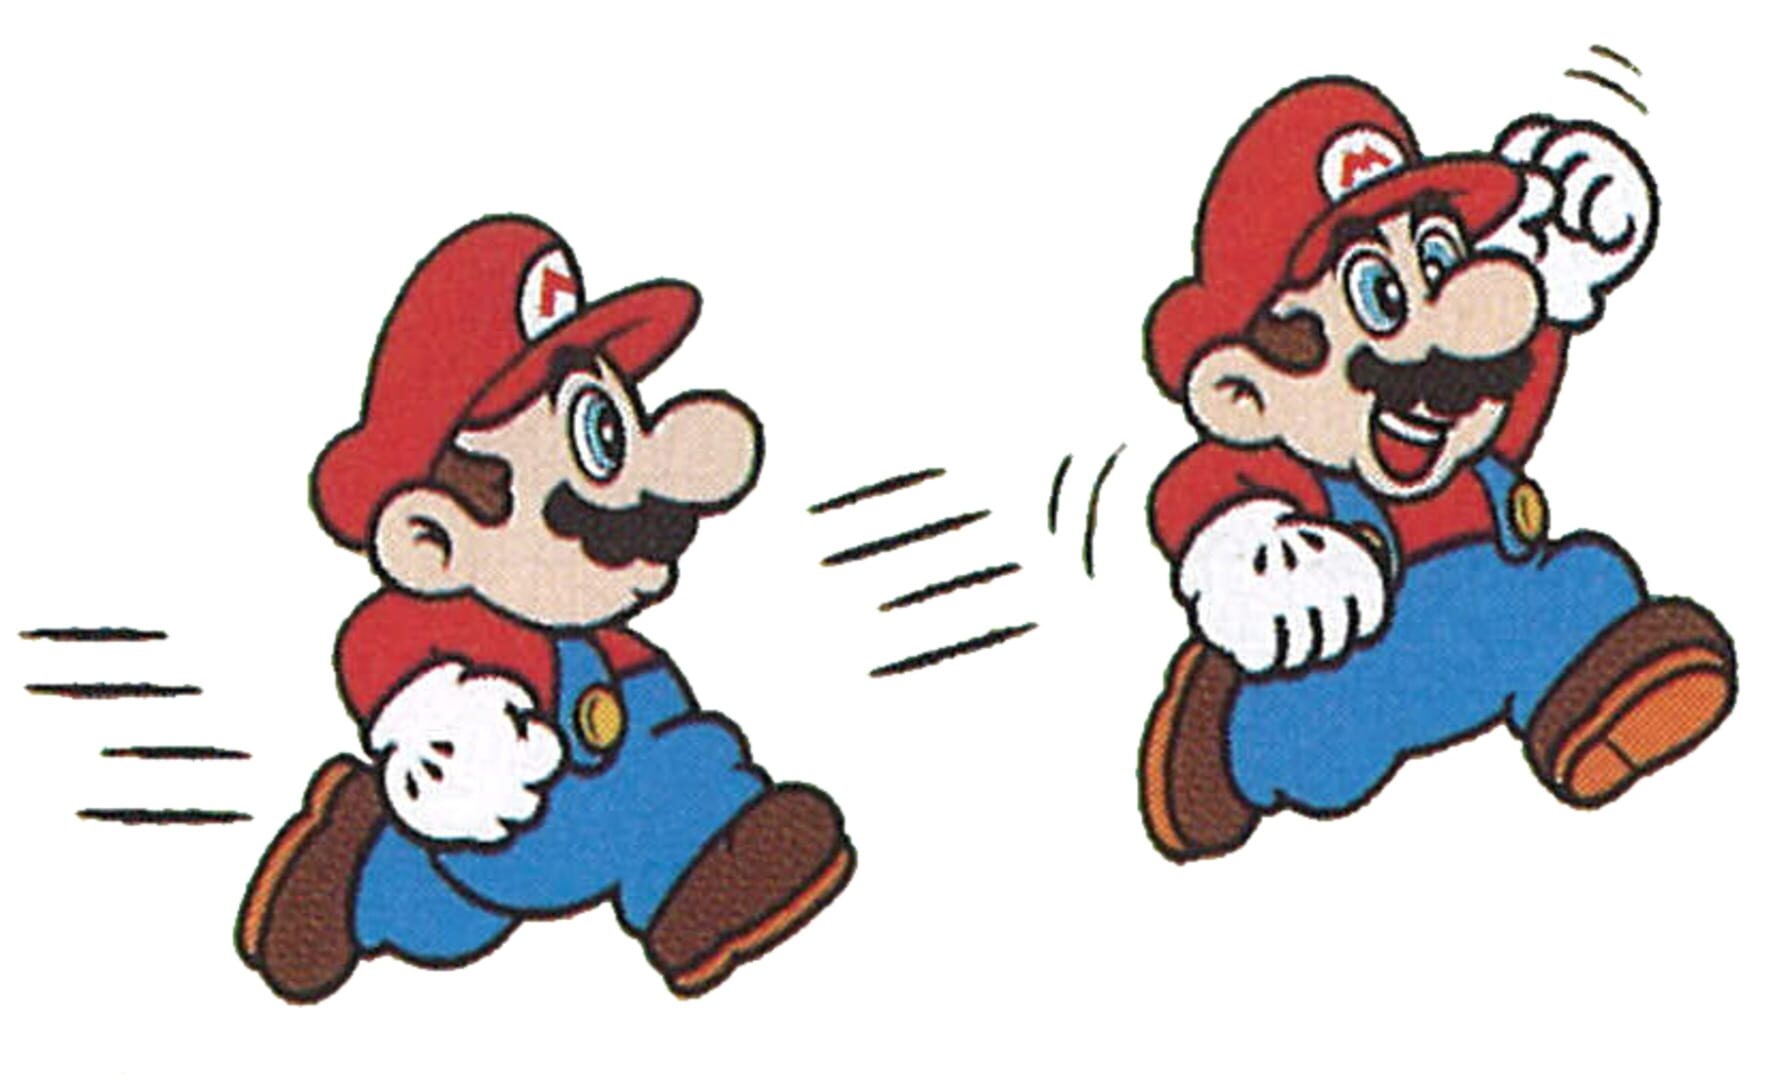 Arte - Super Mario Bros. 2